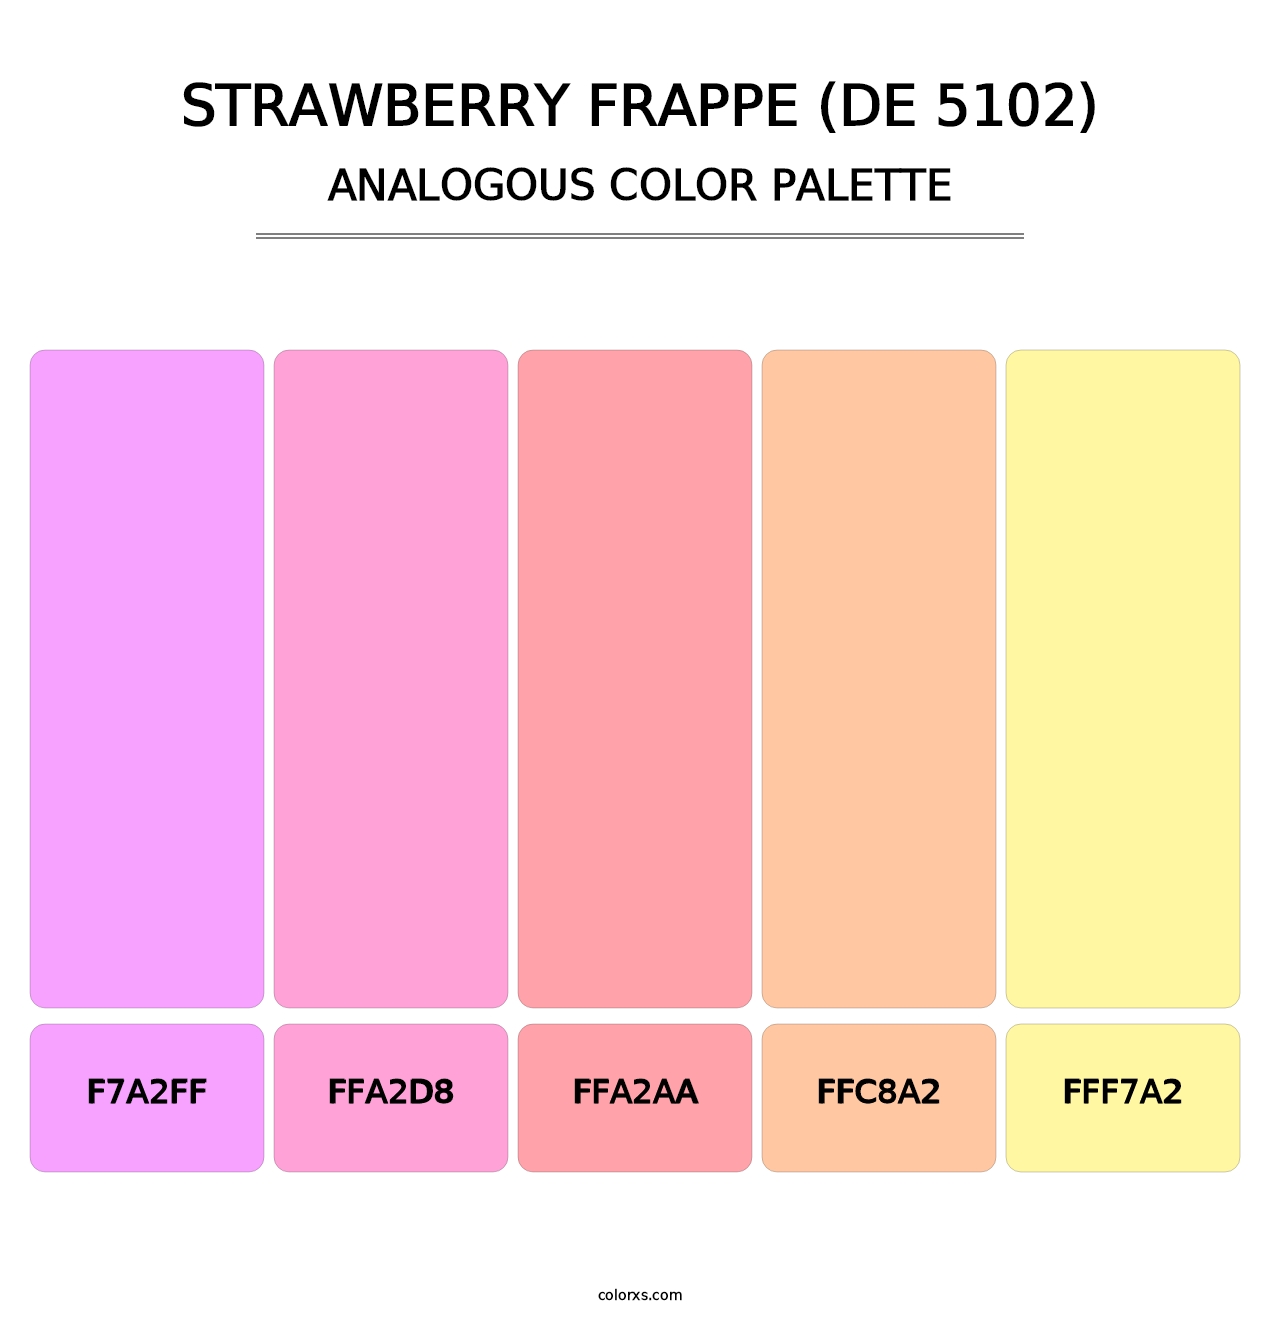 Strawberry Frappe (DE 5102) - Analogous Color Palette